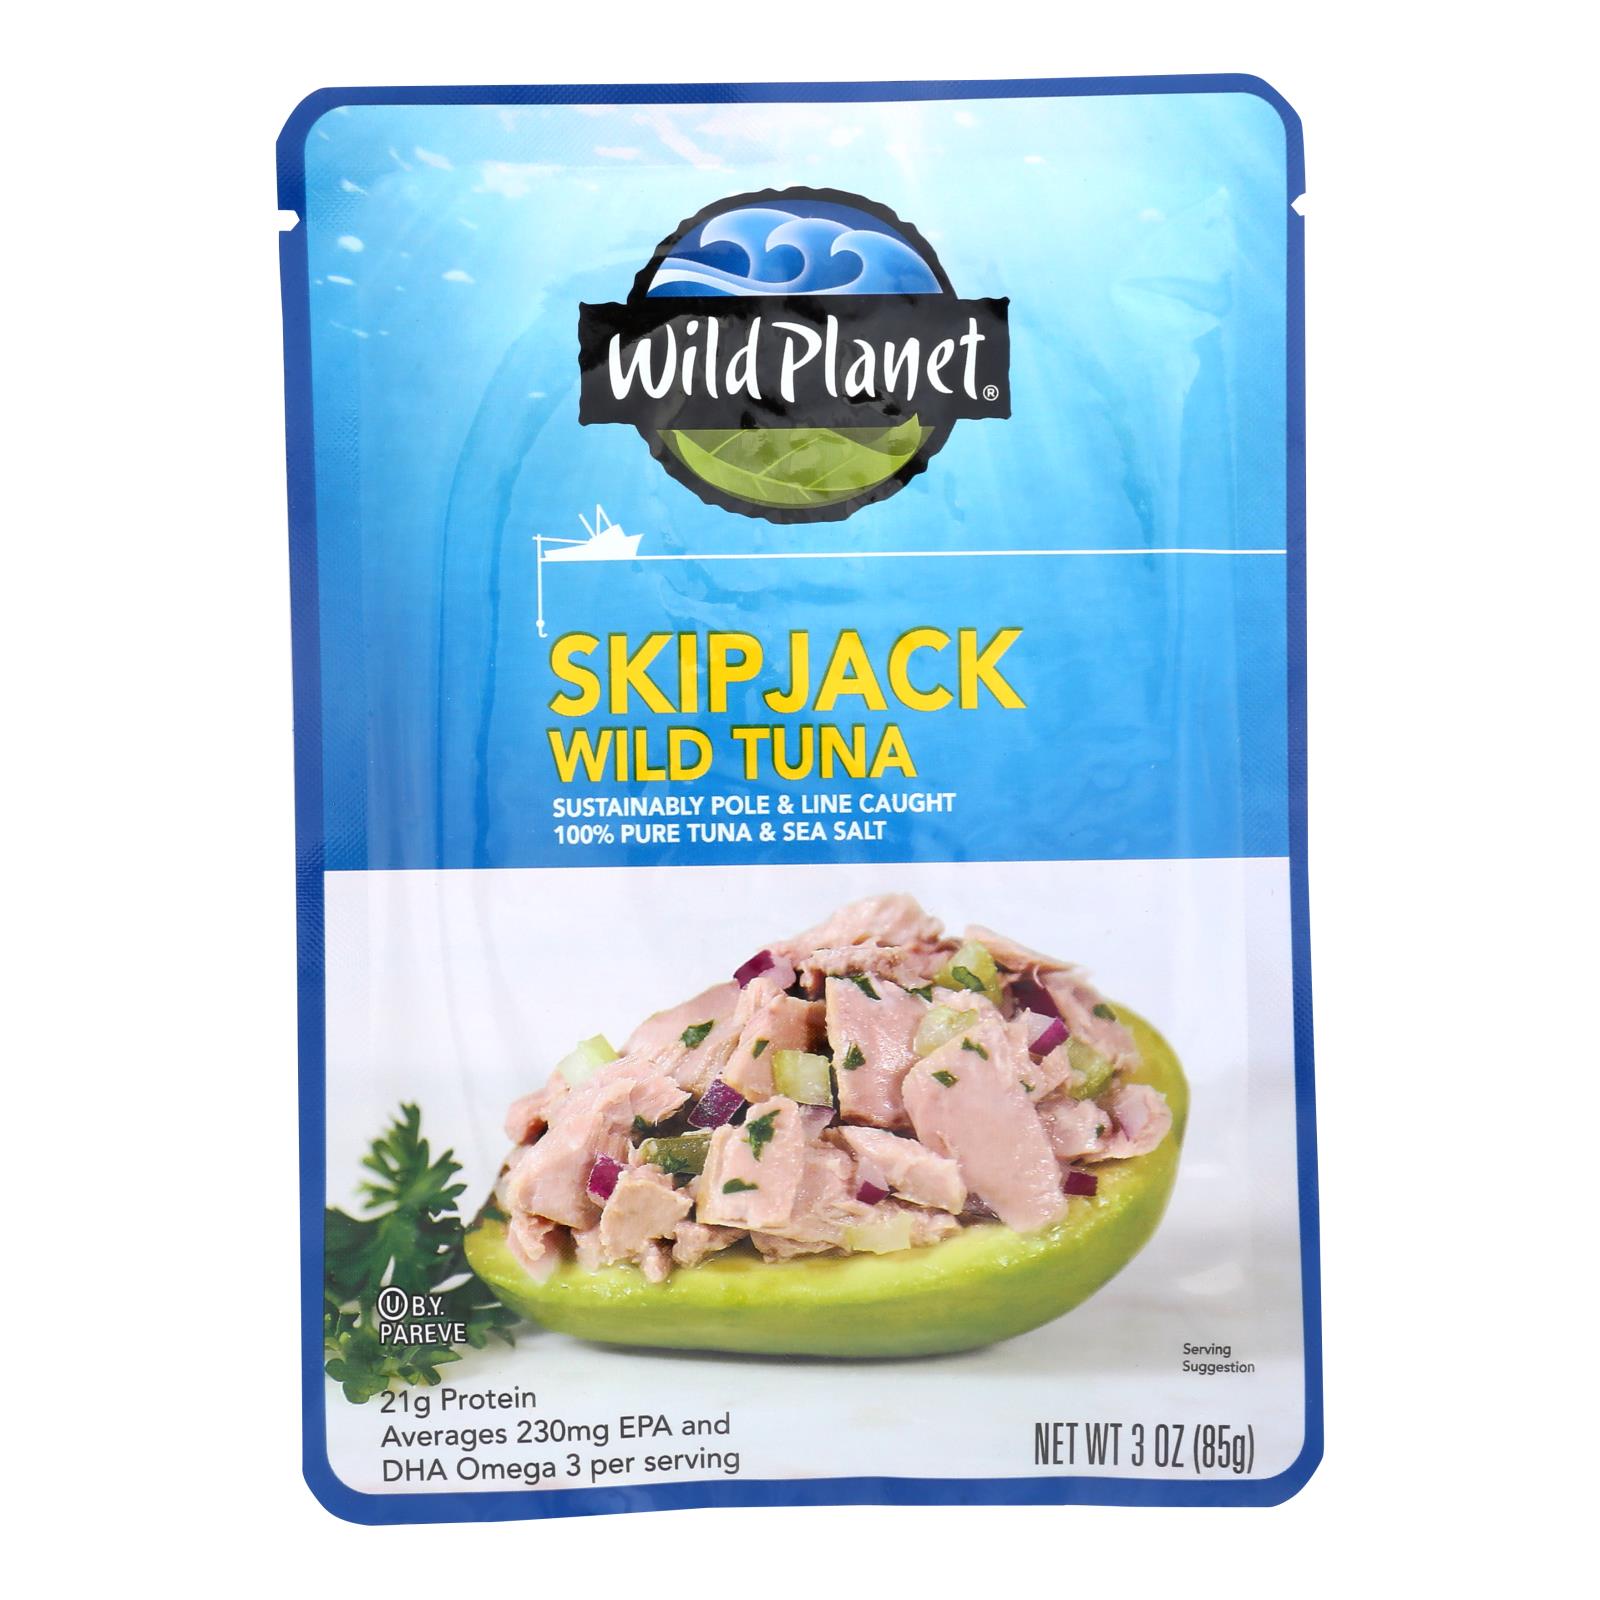 Wild Planet Skip Jack Wild Tuna - 24개 묶음상품 - 3 OZ